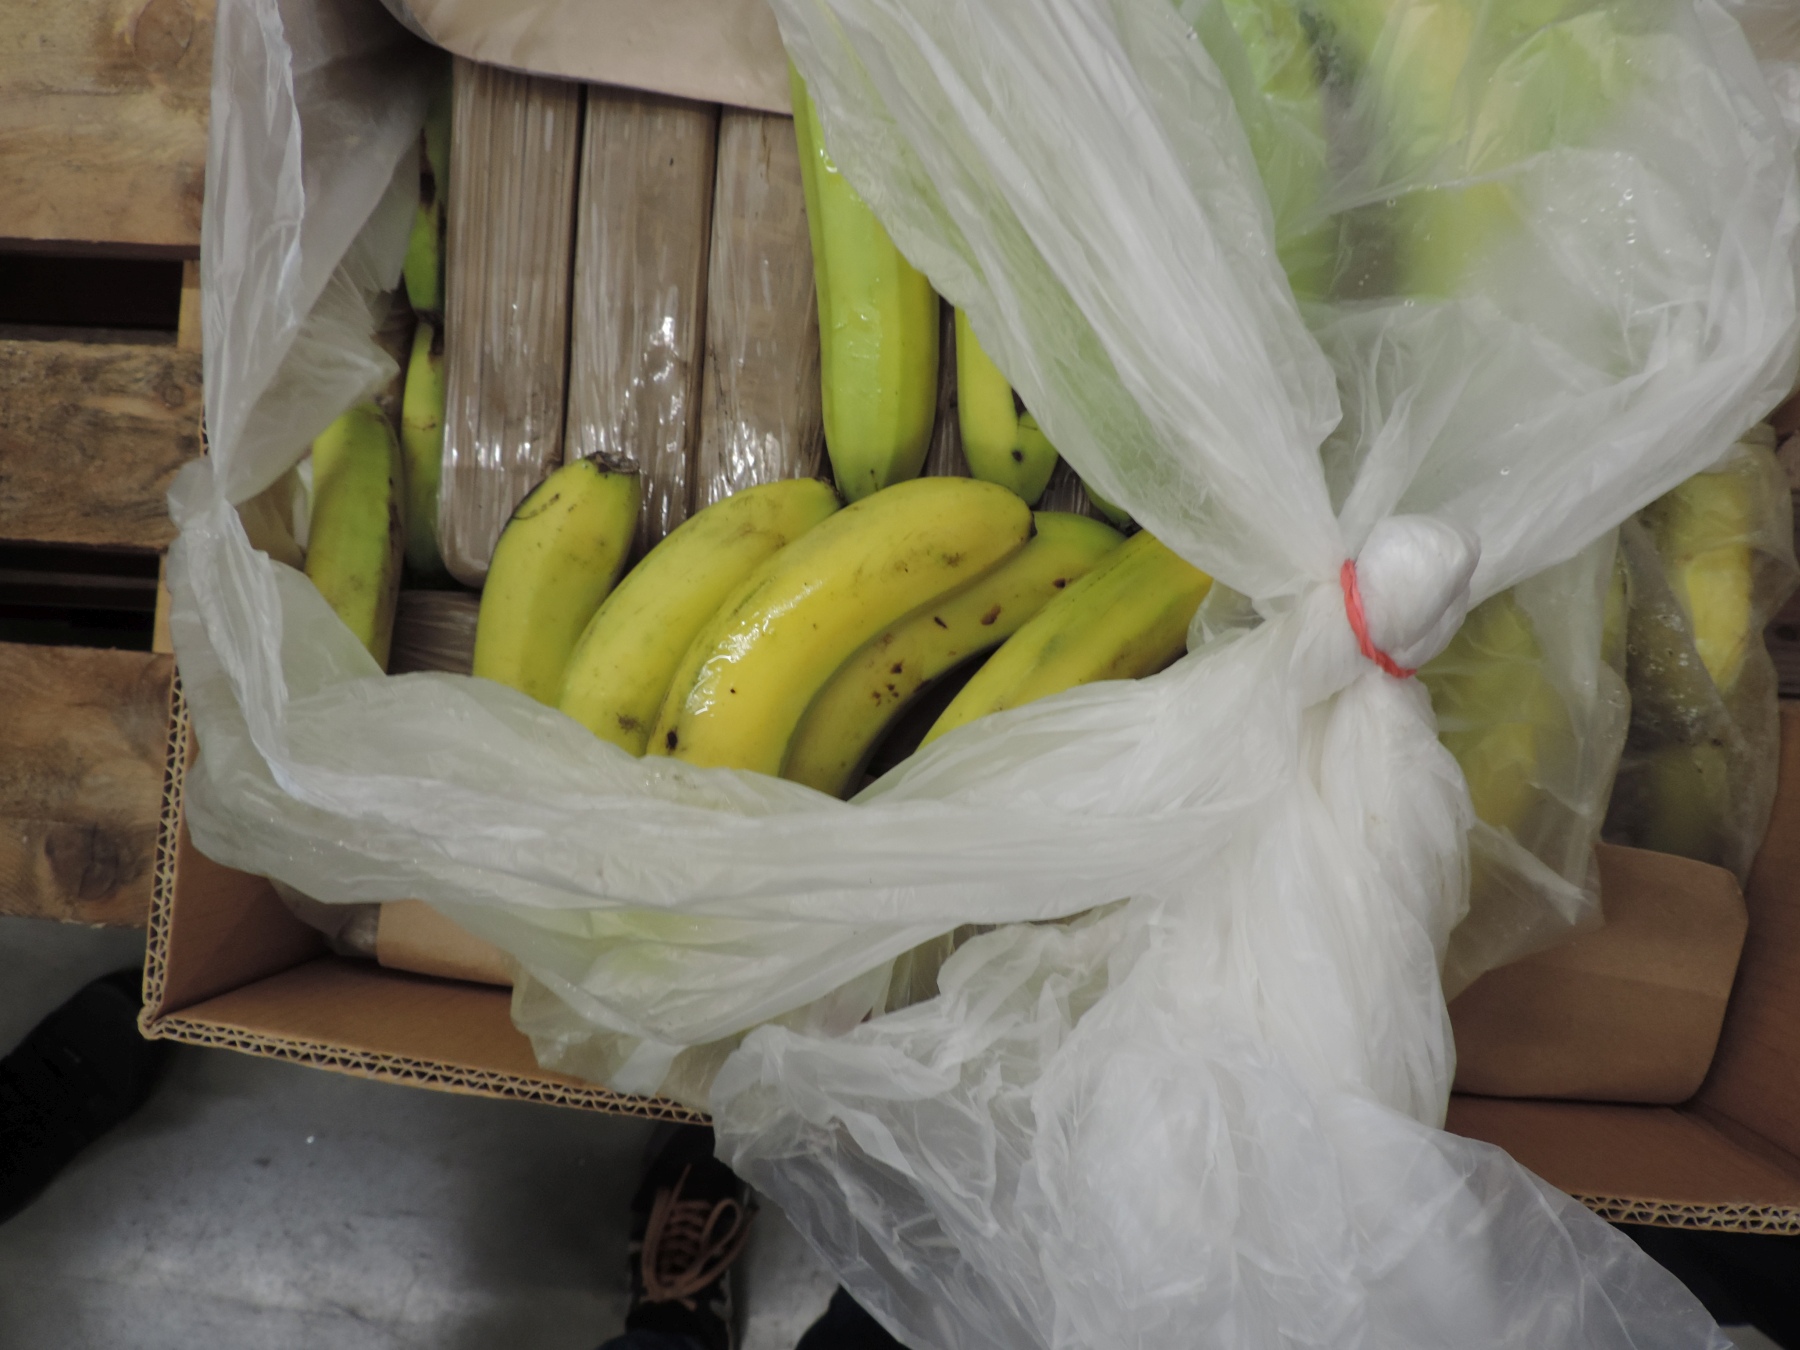 Das Kokain war in 1-Kilo-Paketen in den Bananenkisten versteckt Quelle: BLKA